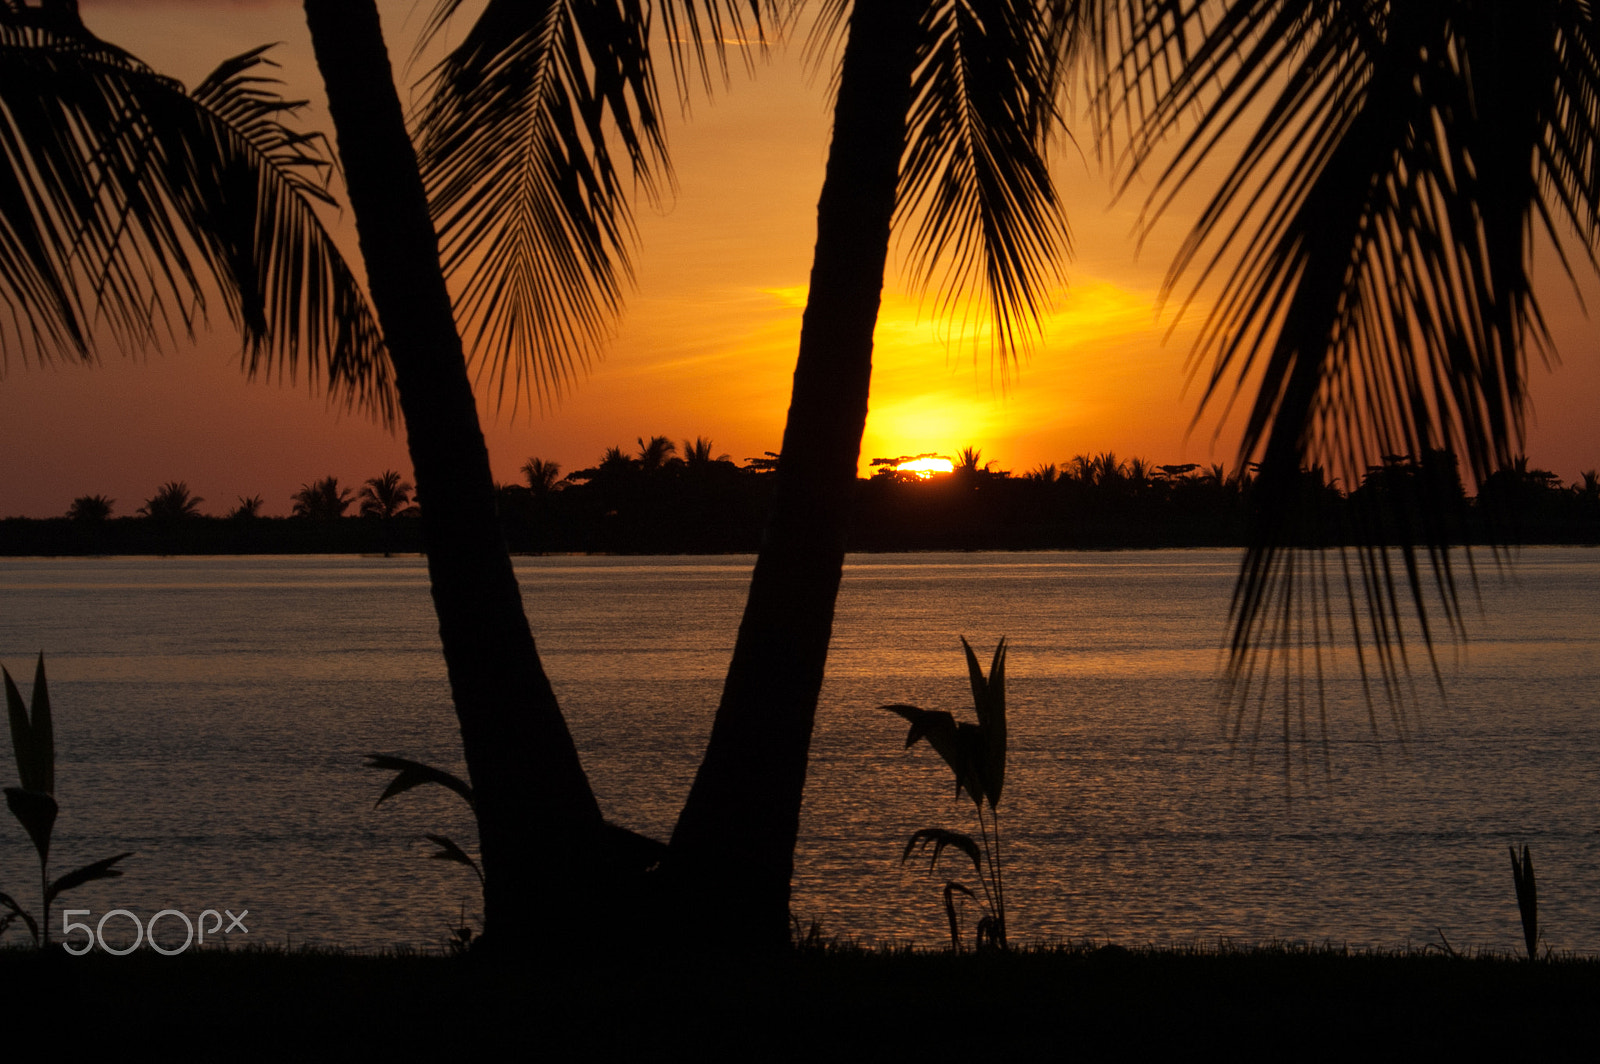 Nikon D70 sample photo. Sunset with palms toward garza photography